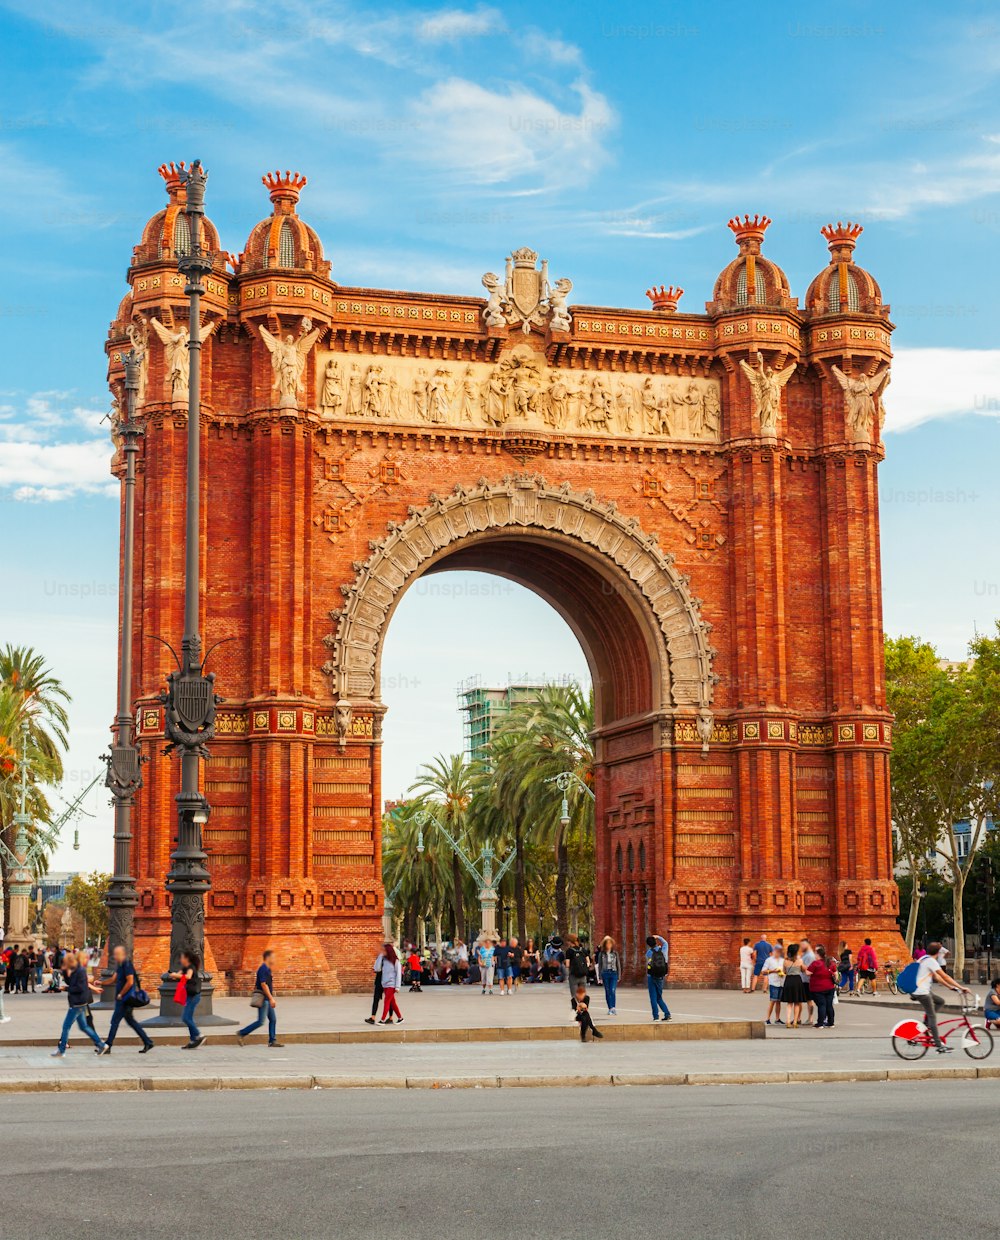 O Arco do Triunfo ou Arco de Triunfo é um arco triunfal na cidade de Barcelona, na região da Catalunha, na Espanha